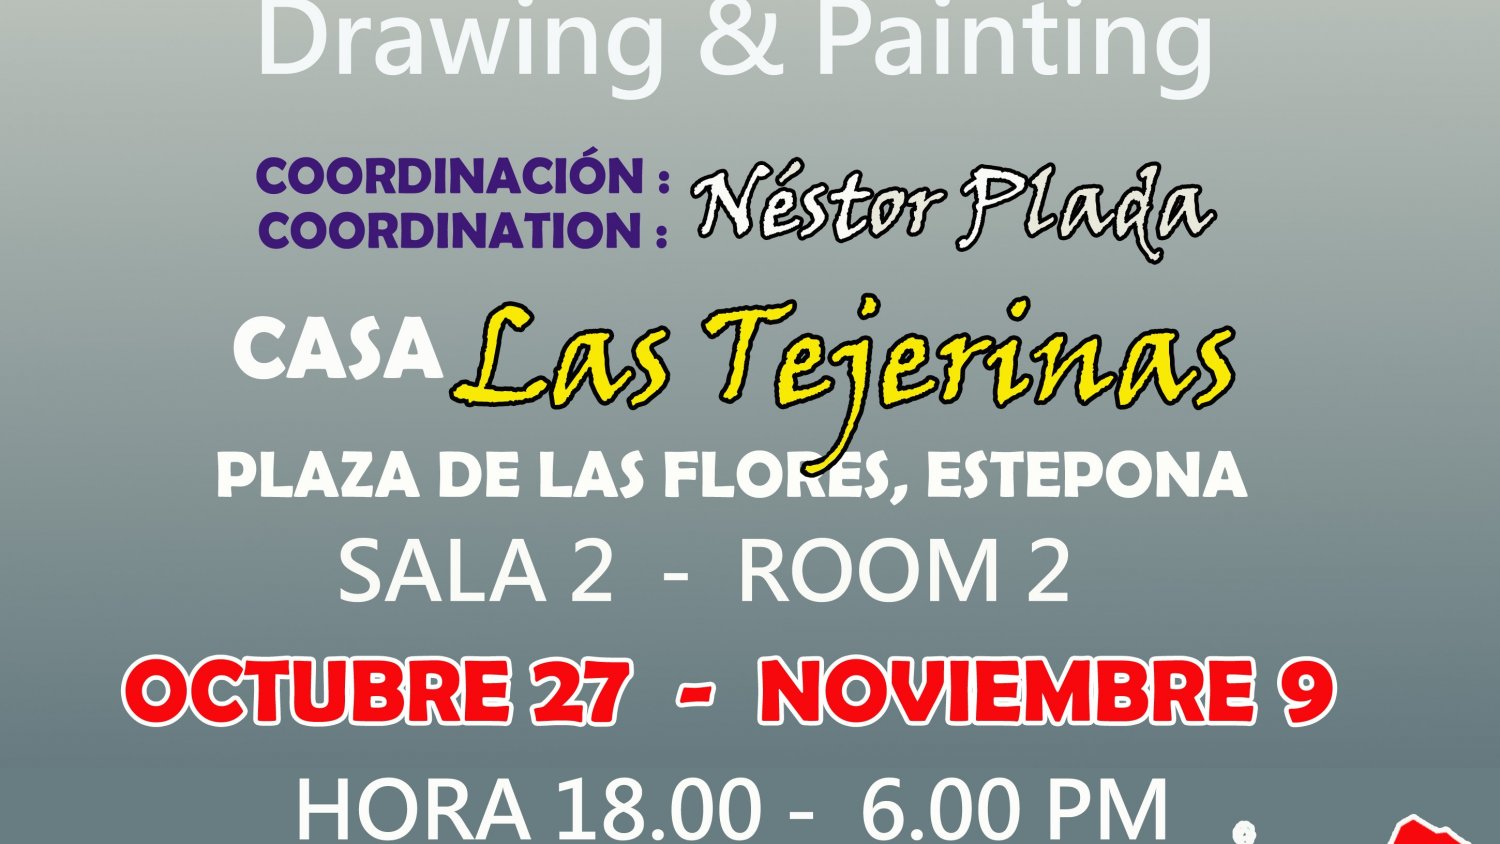 La Casa de Las Tejerinas acoge una exposición colectiva coordinada por el pintor Néstor Plada